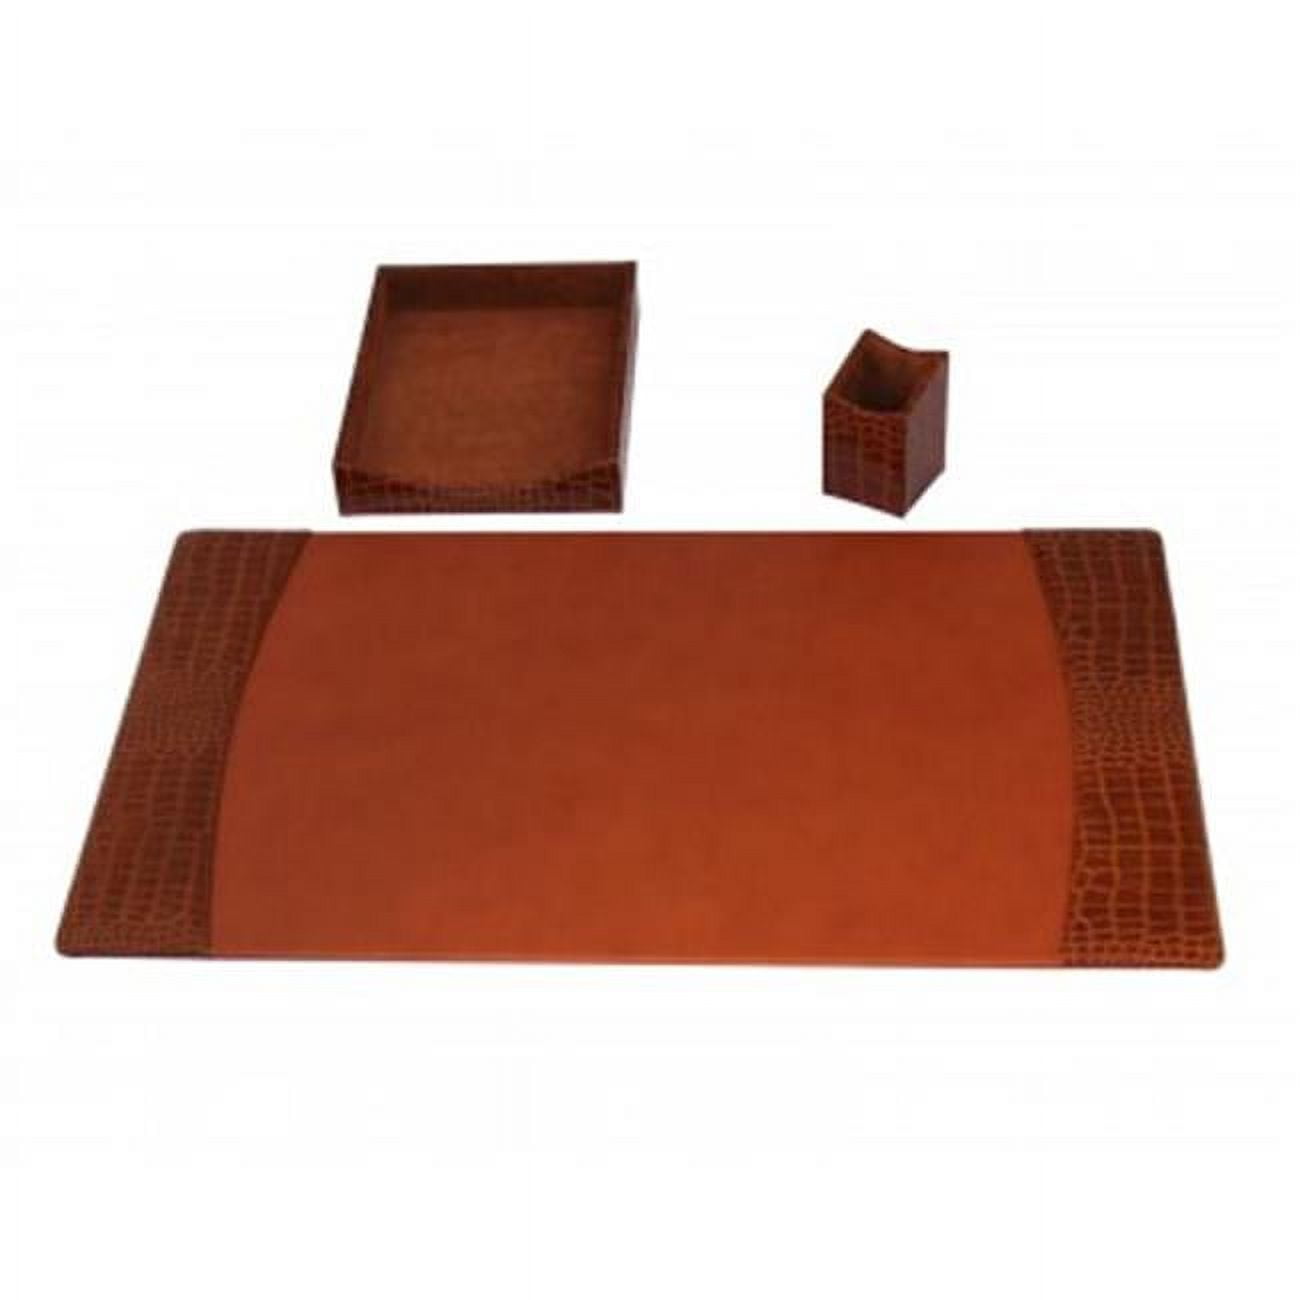 D6137 Protacini Cognac Brown Italian Patent Leather 3 Piece Desk Set